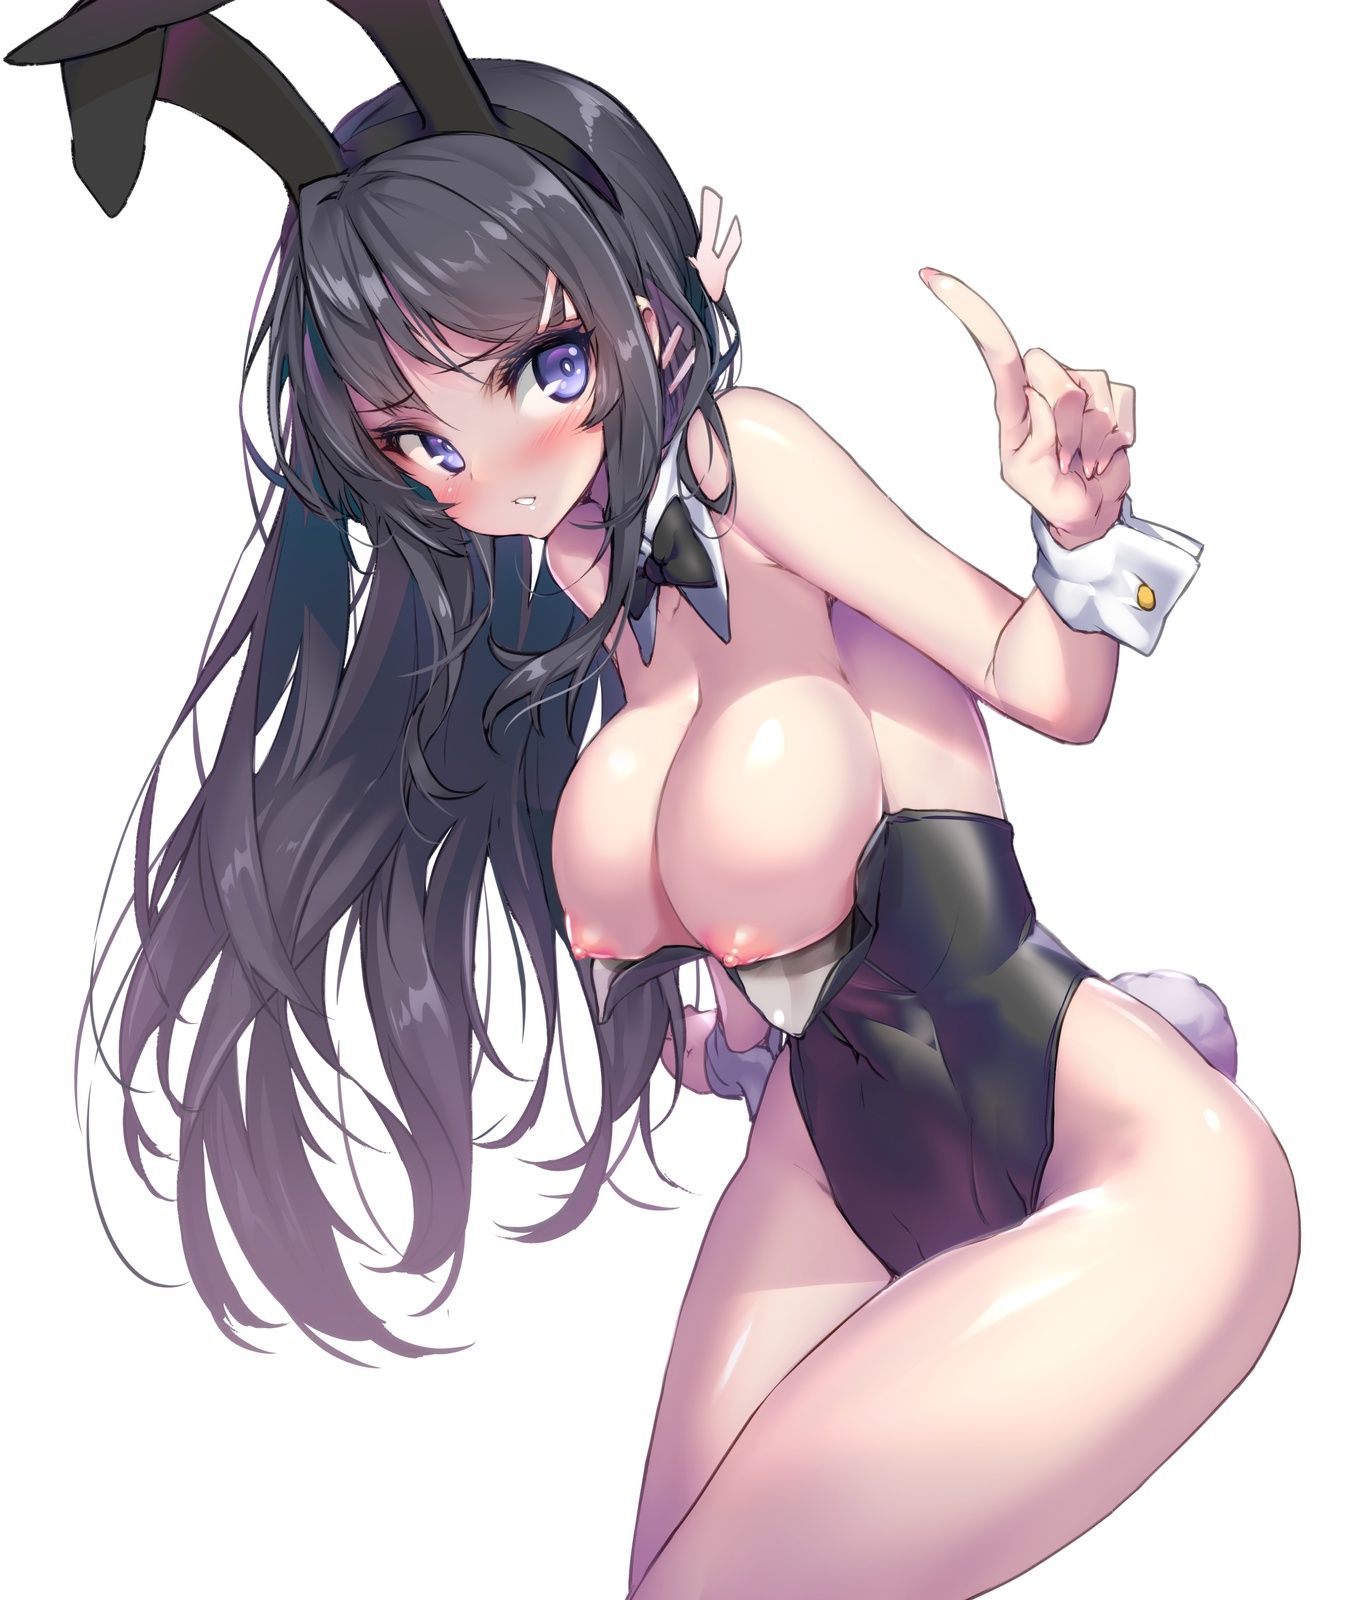 [Youth pig bastard] bunny girl senior, erotic image of Mai Sakurajima! Part 2 1